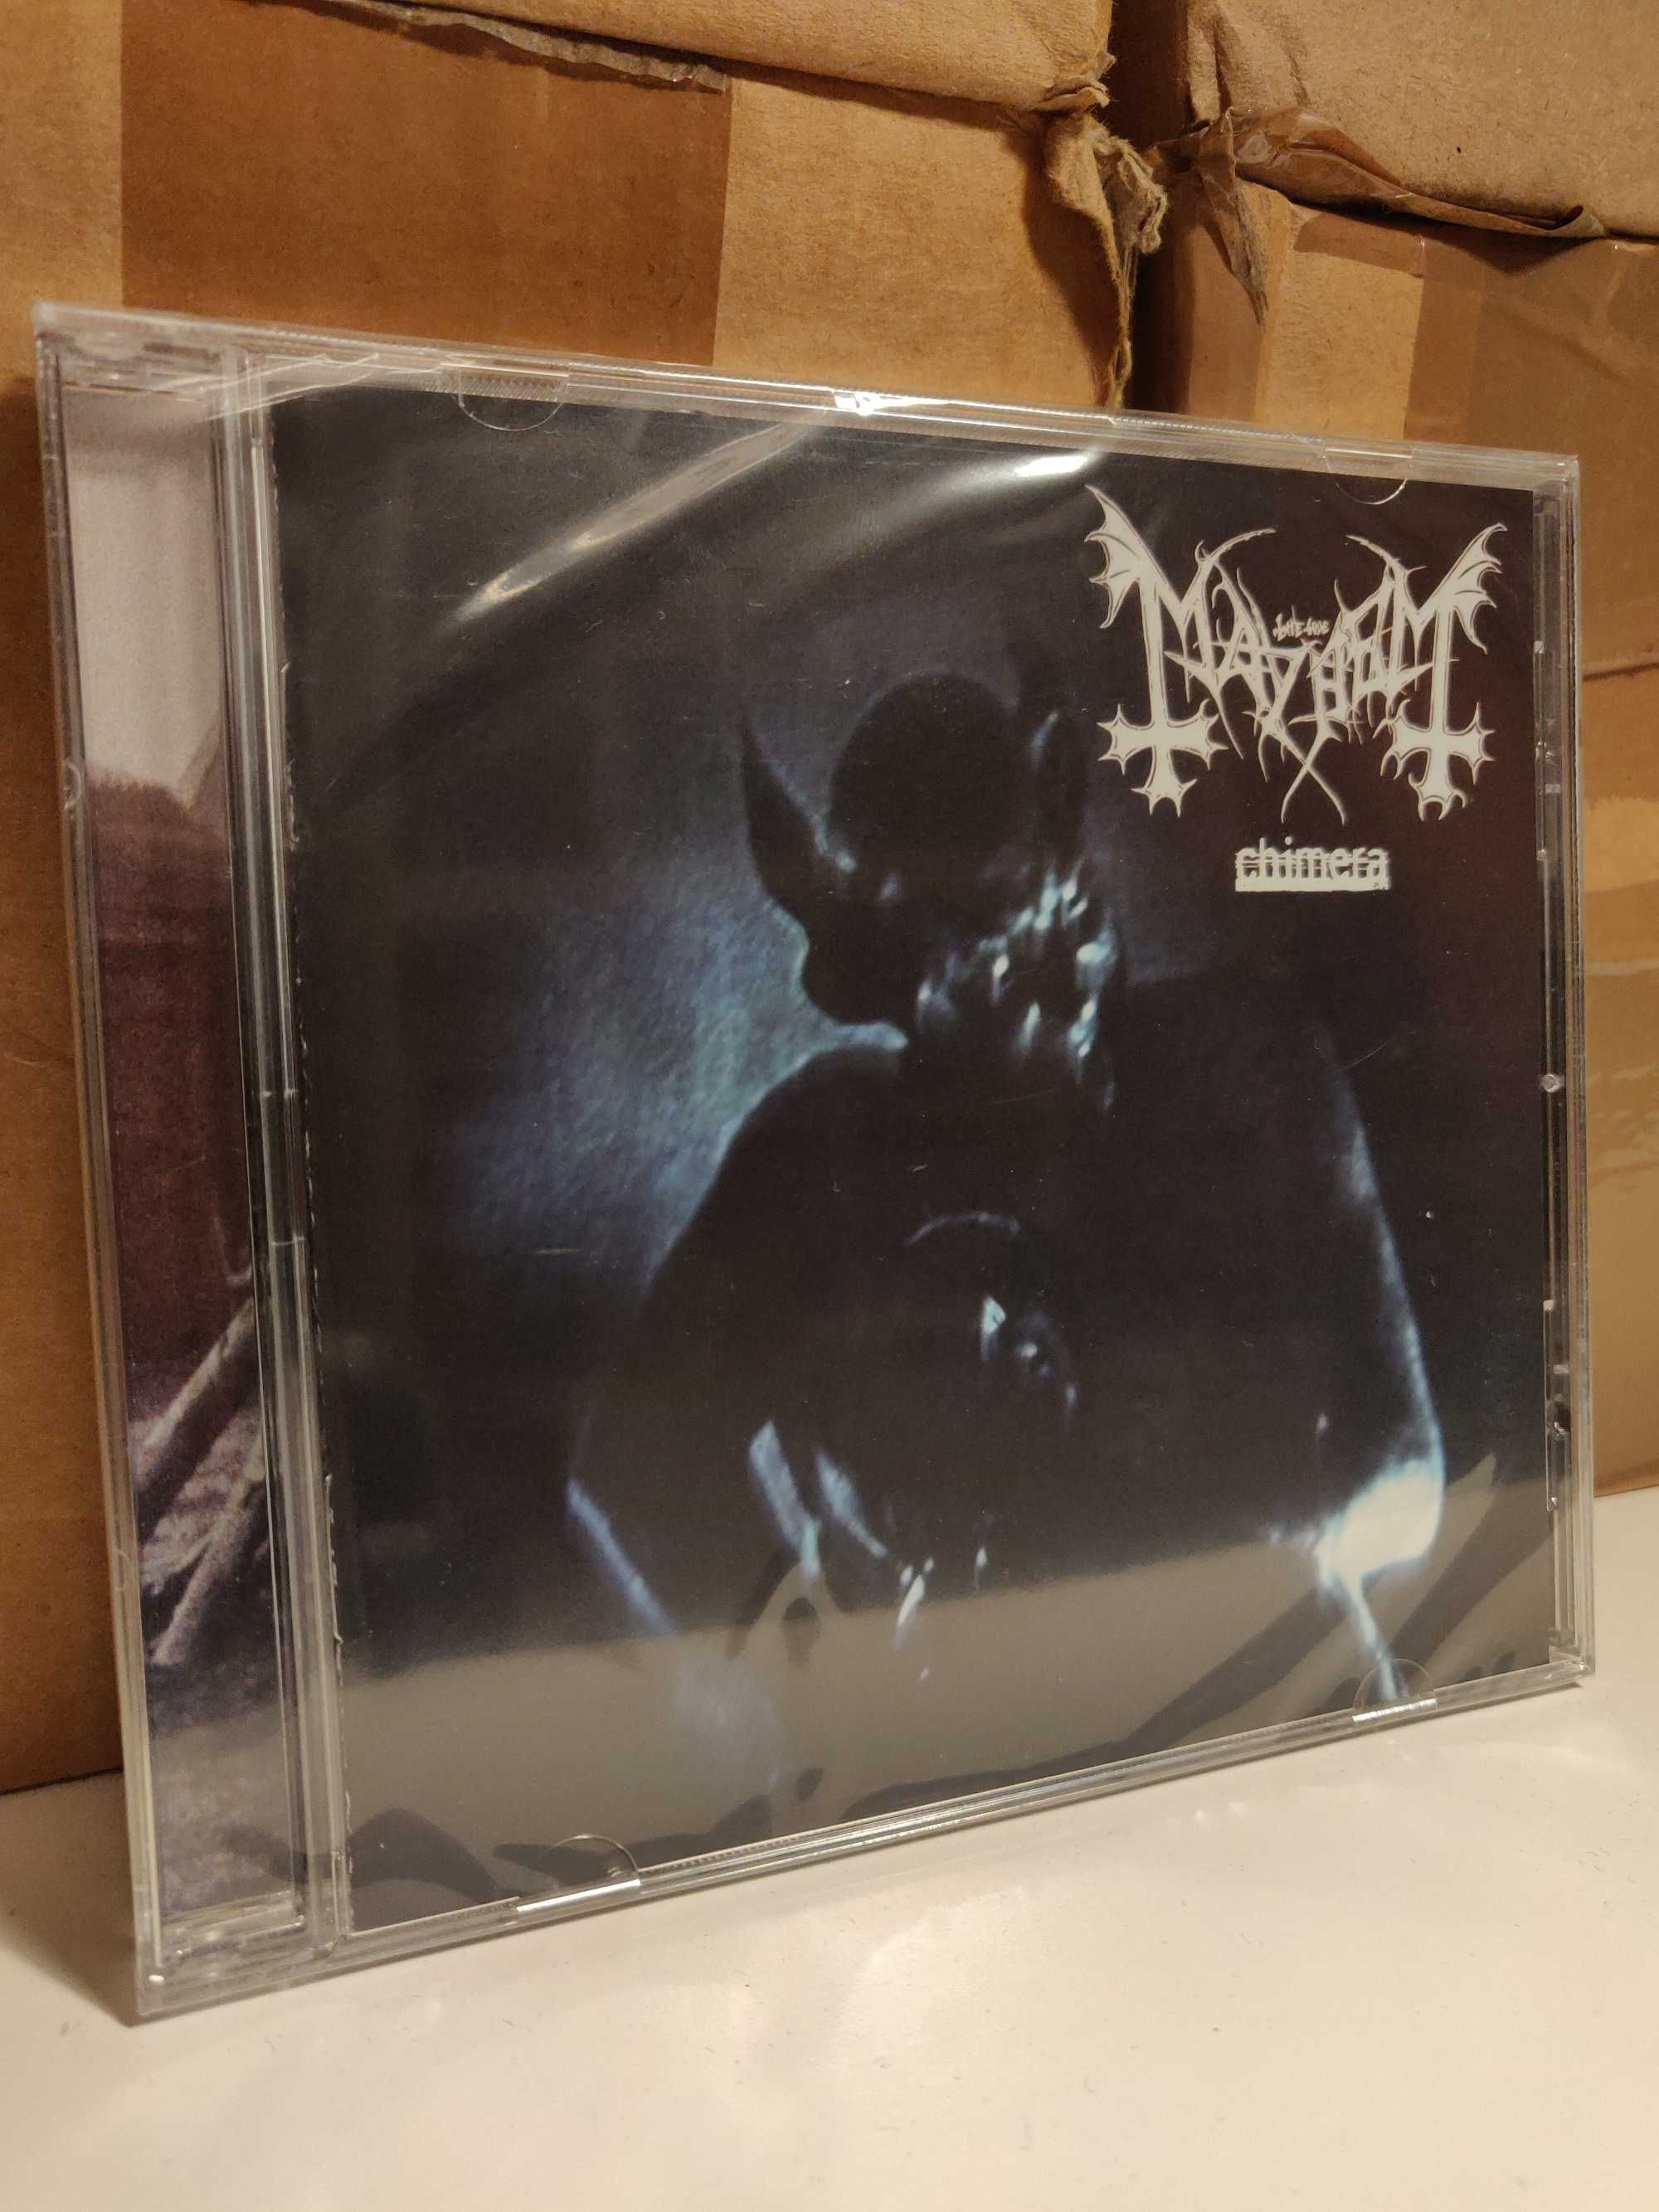 Фірмовий CD Mayhem (2004/перевидання). Black Metal